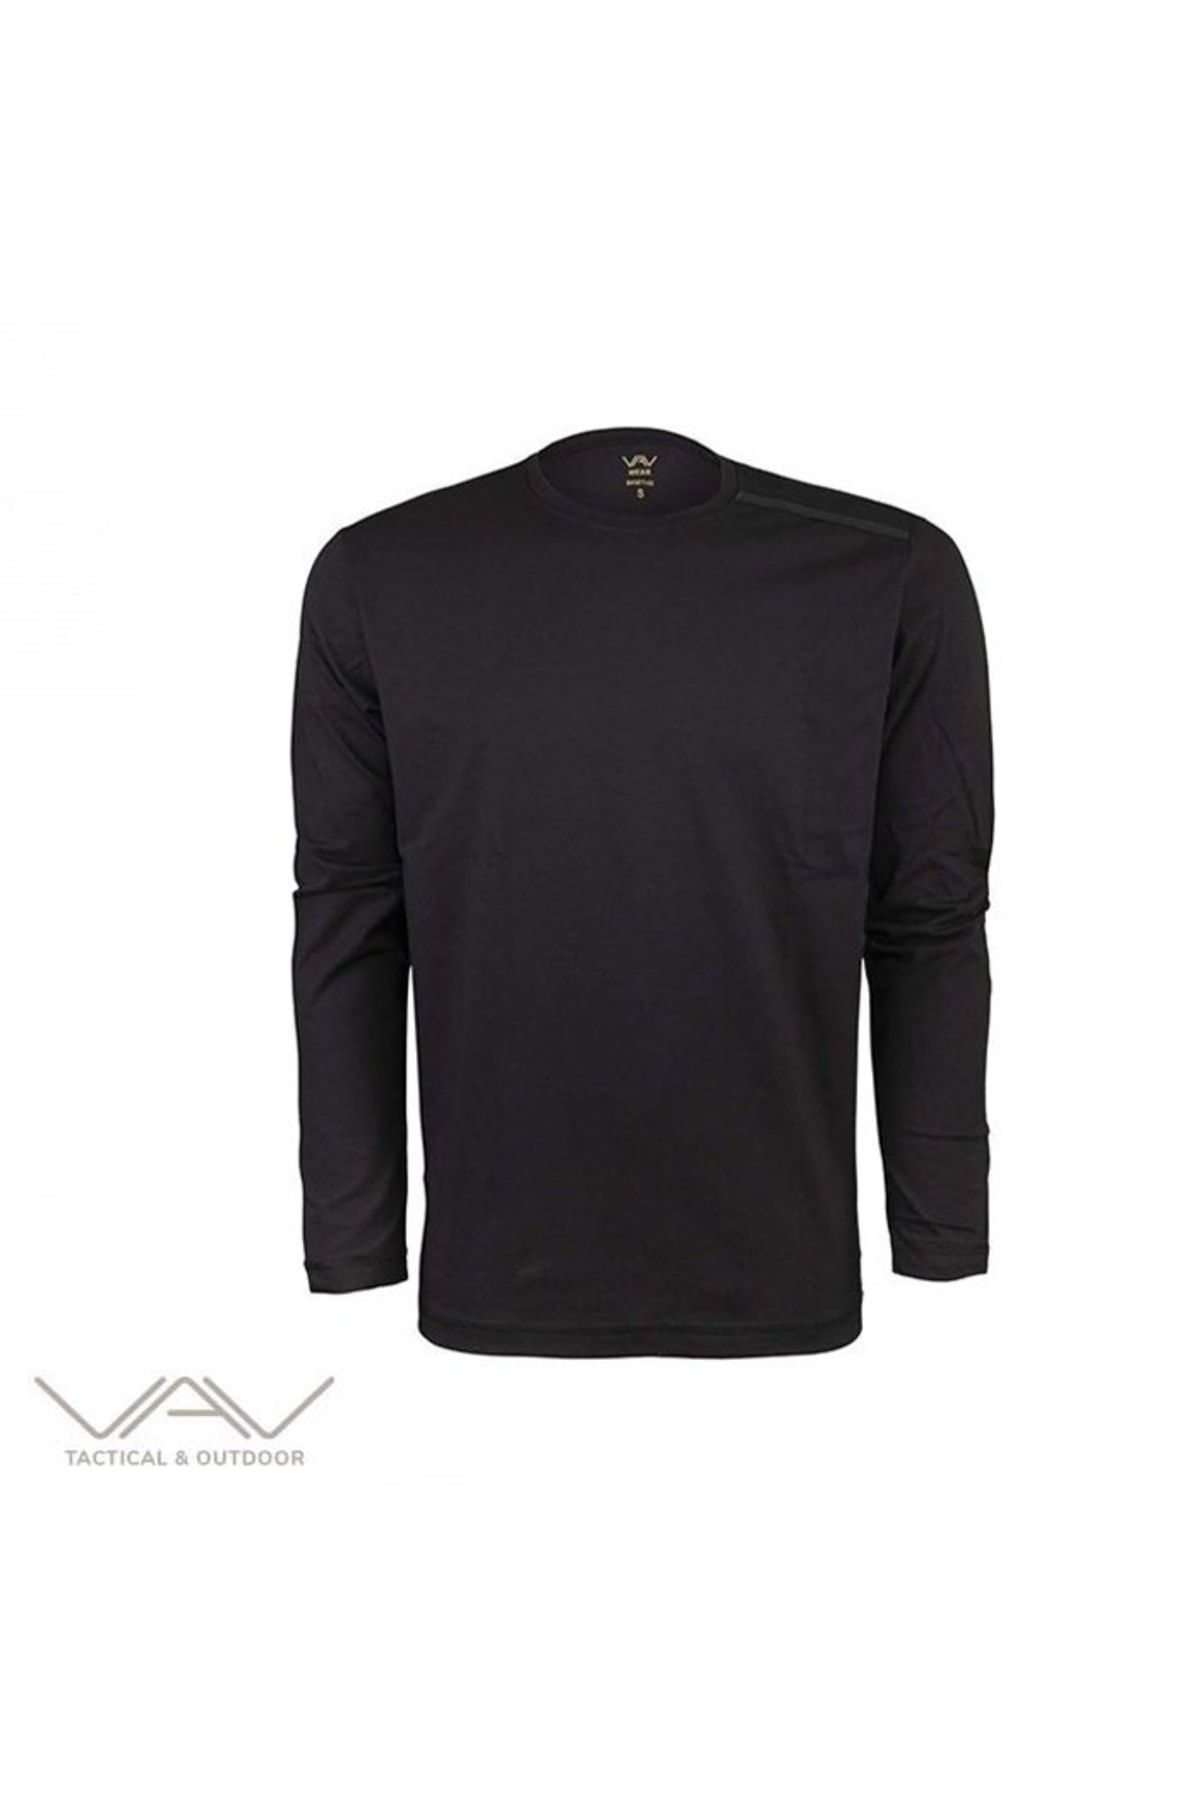 VAV WEAR Vav Baseti-04 Uzun Kol Sweatshirt Siyah S